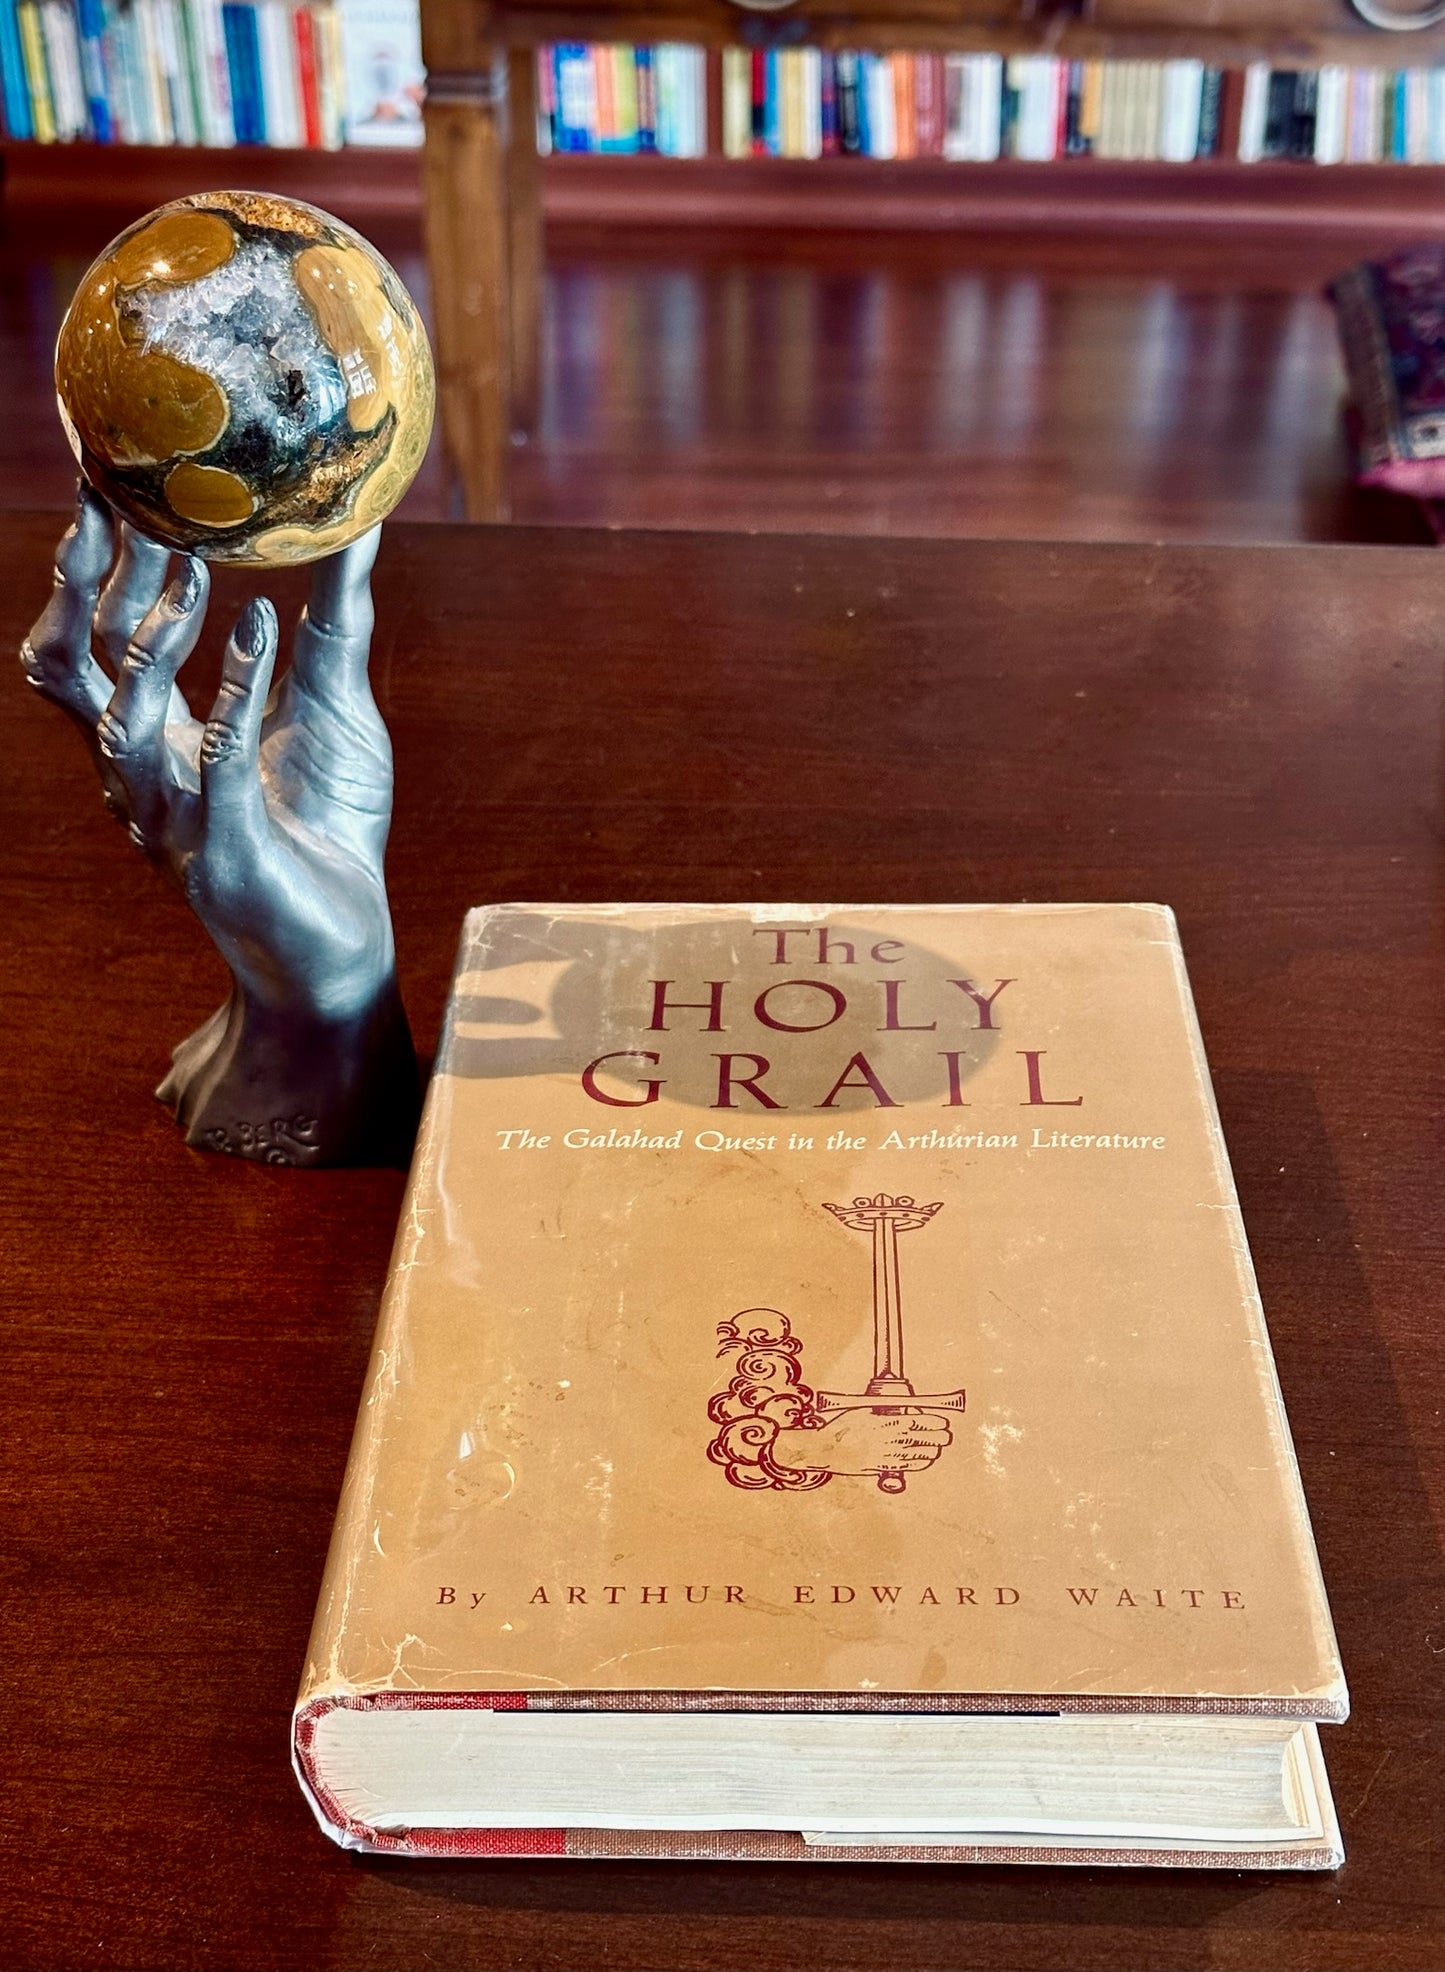 The Holy Grail by Arthur Edward Waite